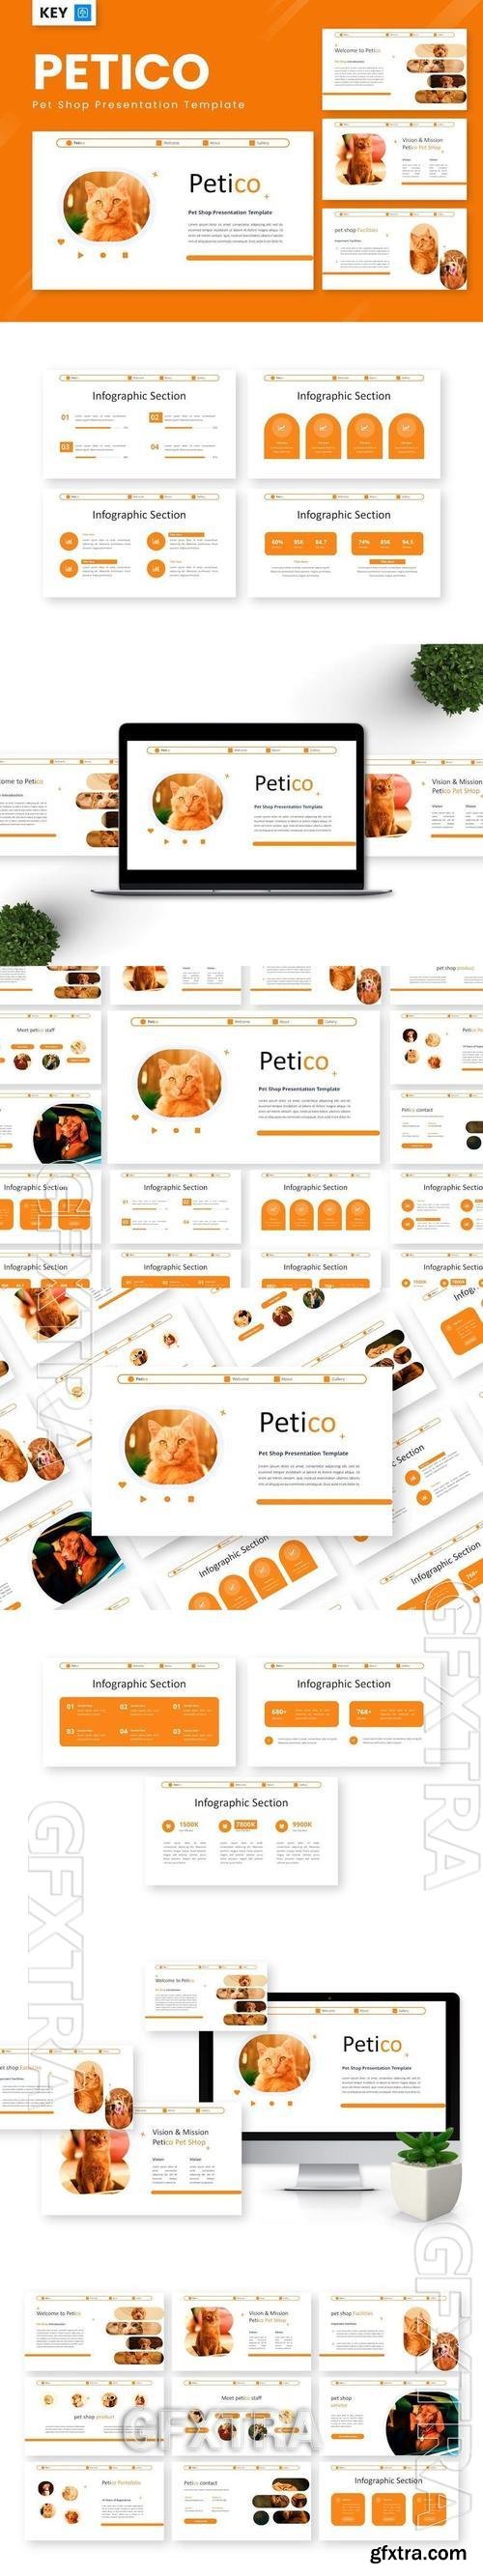 Petico - Pet Shop Keynote Templates ZPRXLX3